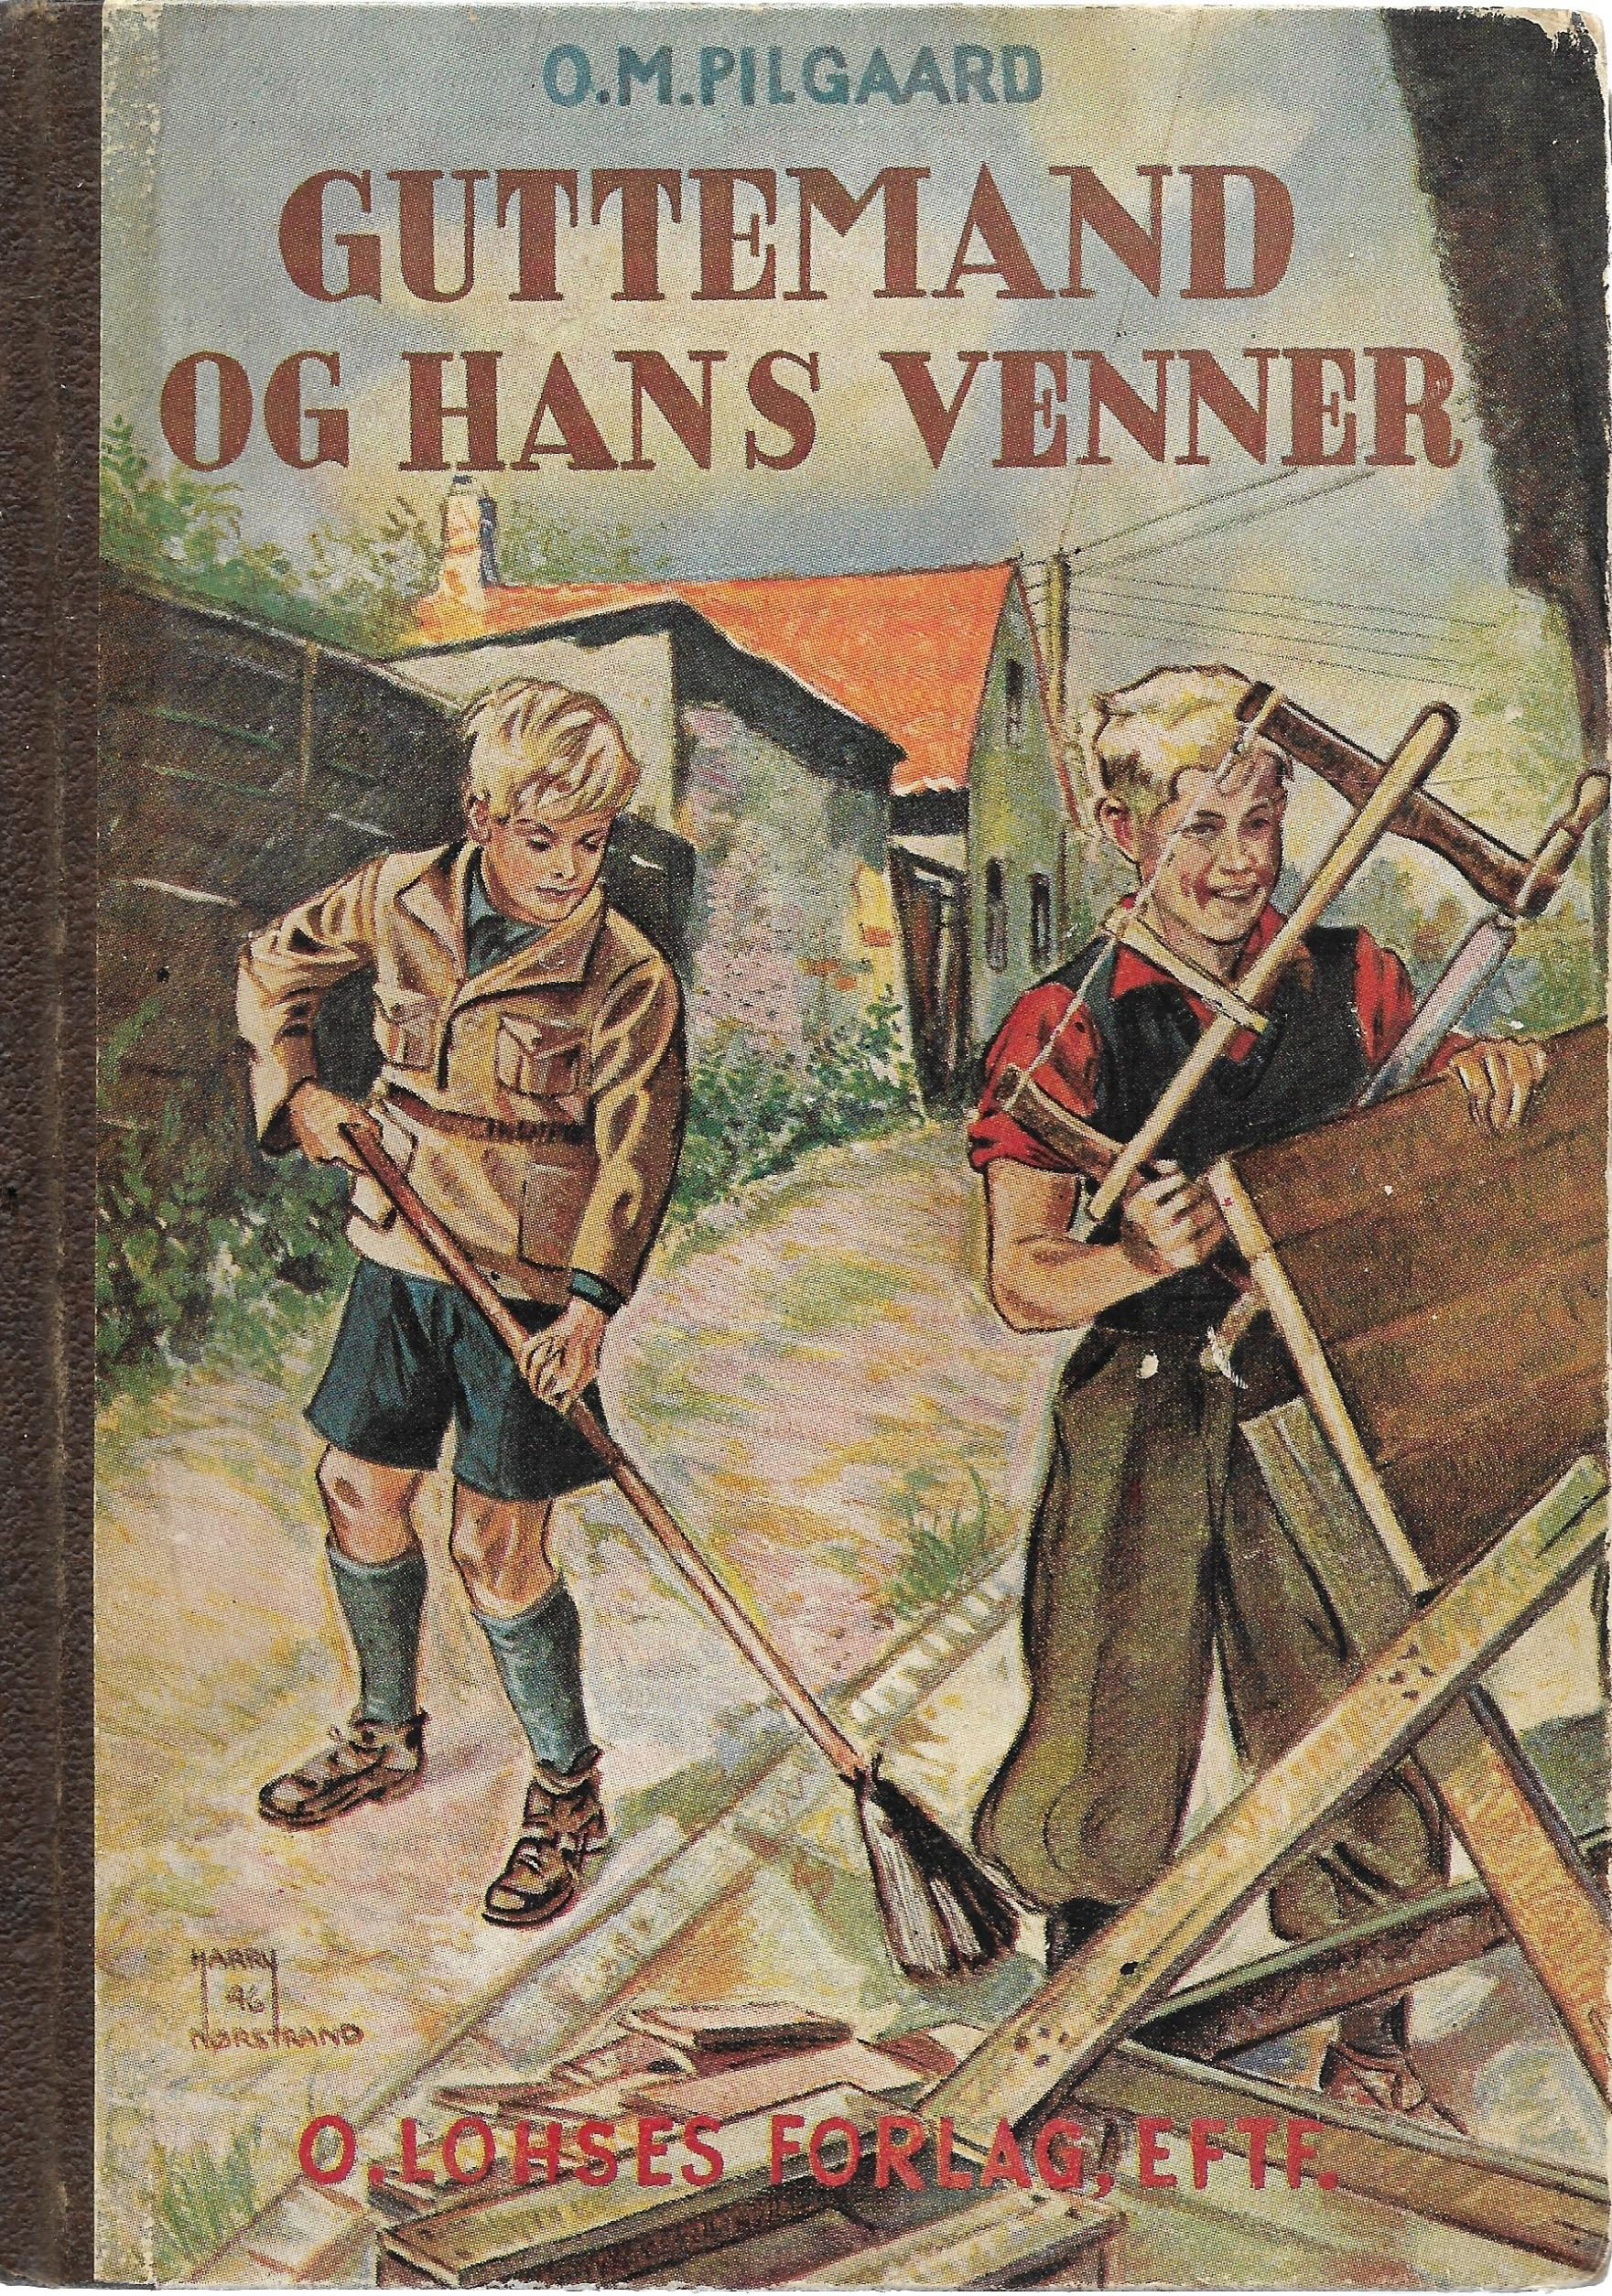 Guttemand og hans venner - Ole Møller Jensen Pilgaard 1885-1